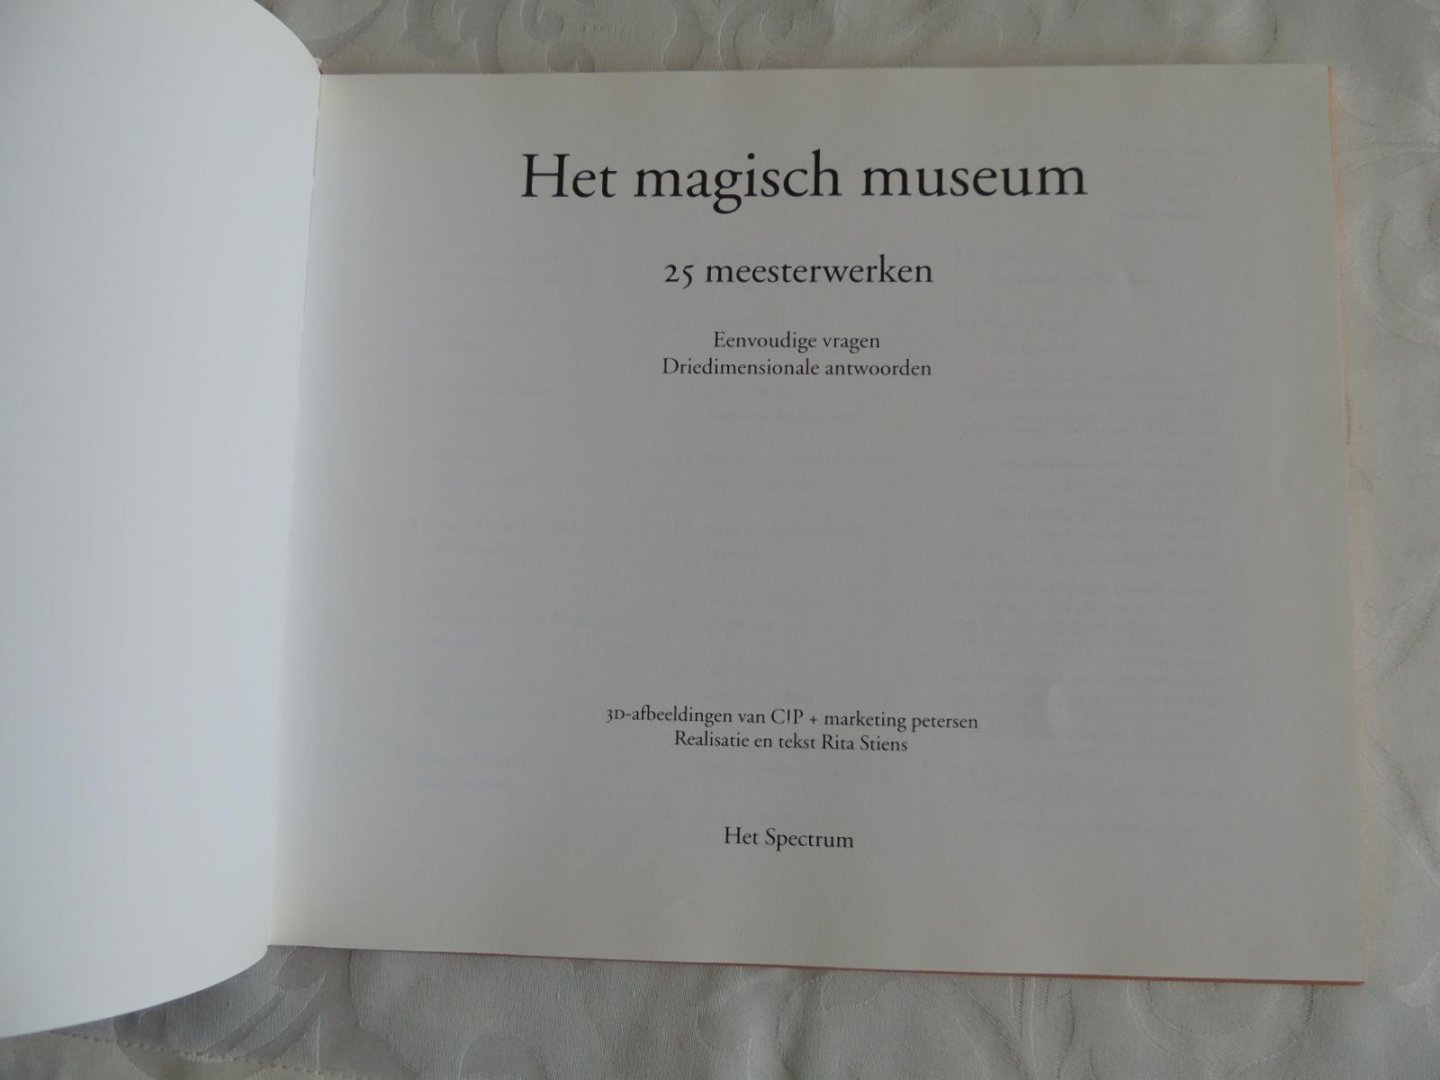 Stiens, Rita - Het magisch museum - 25 meesterwerken, eenvoudige vragen, driedimensionale antwoorden